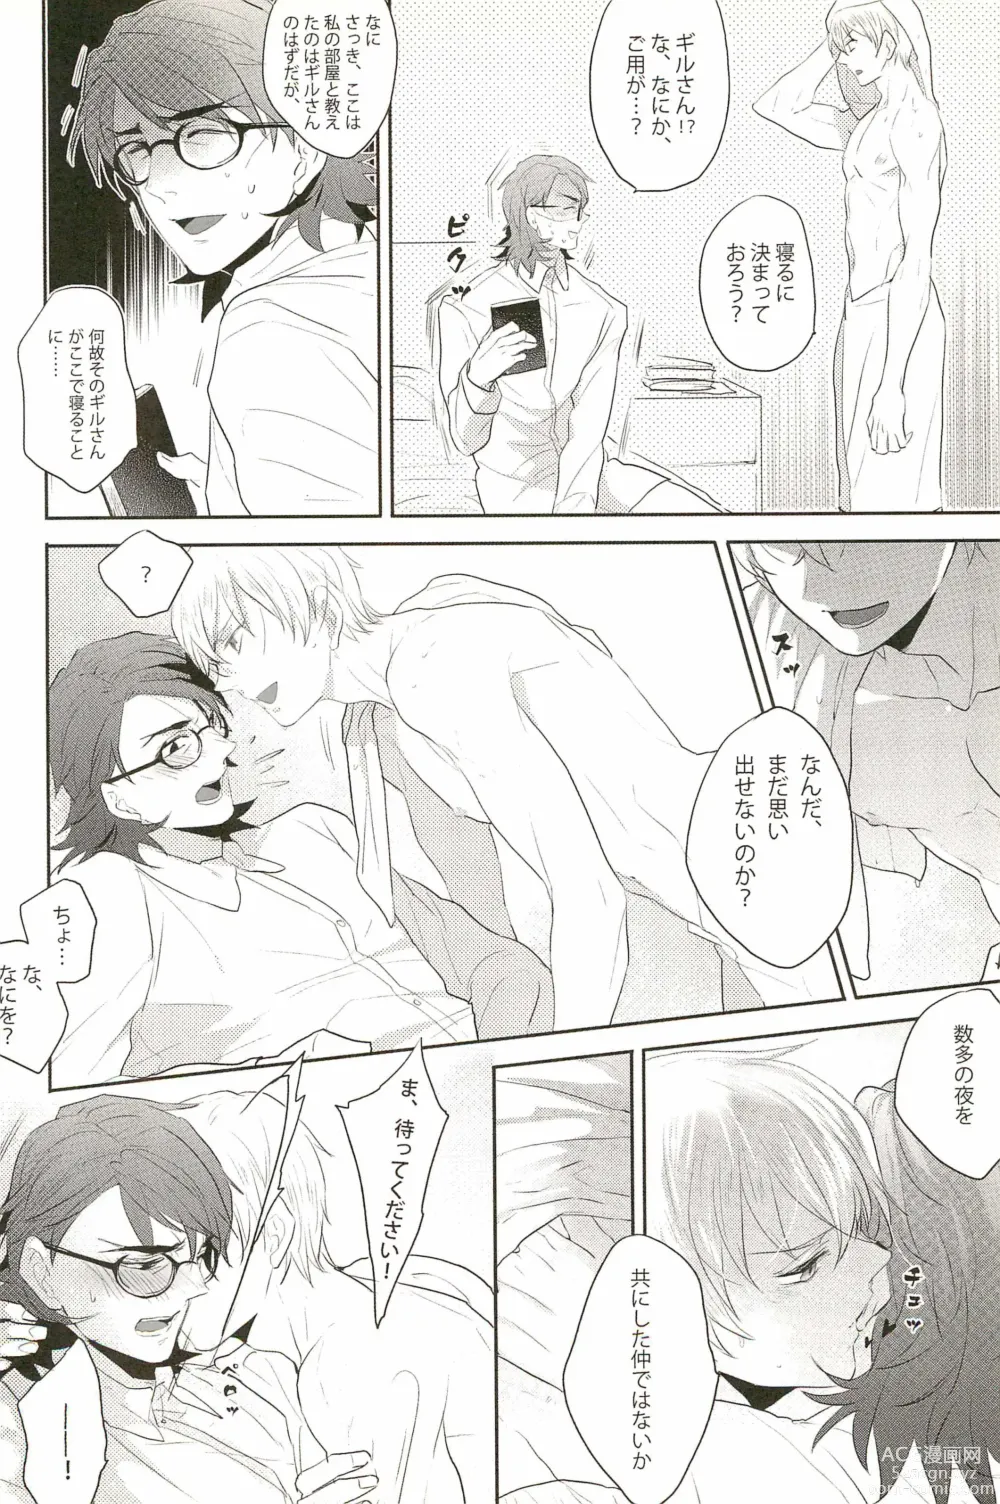 Page 14 of doujinshi Warera Dosei Shite Iru.